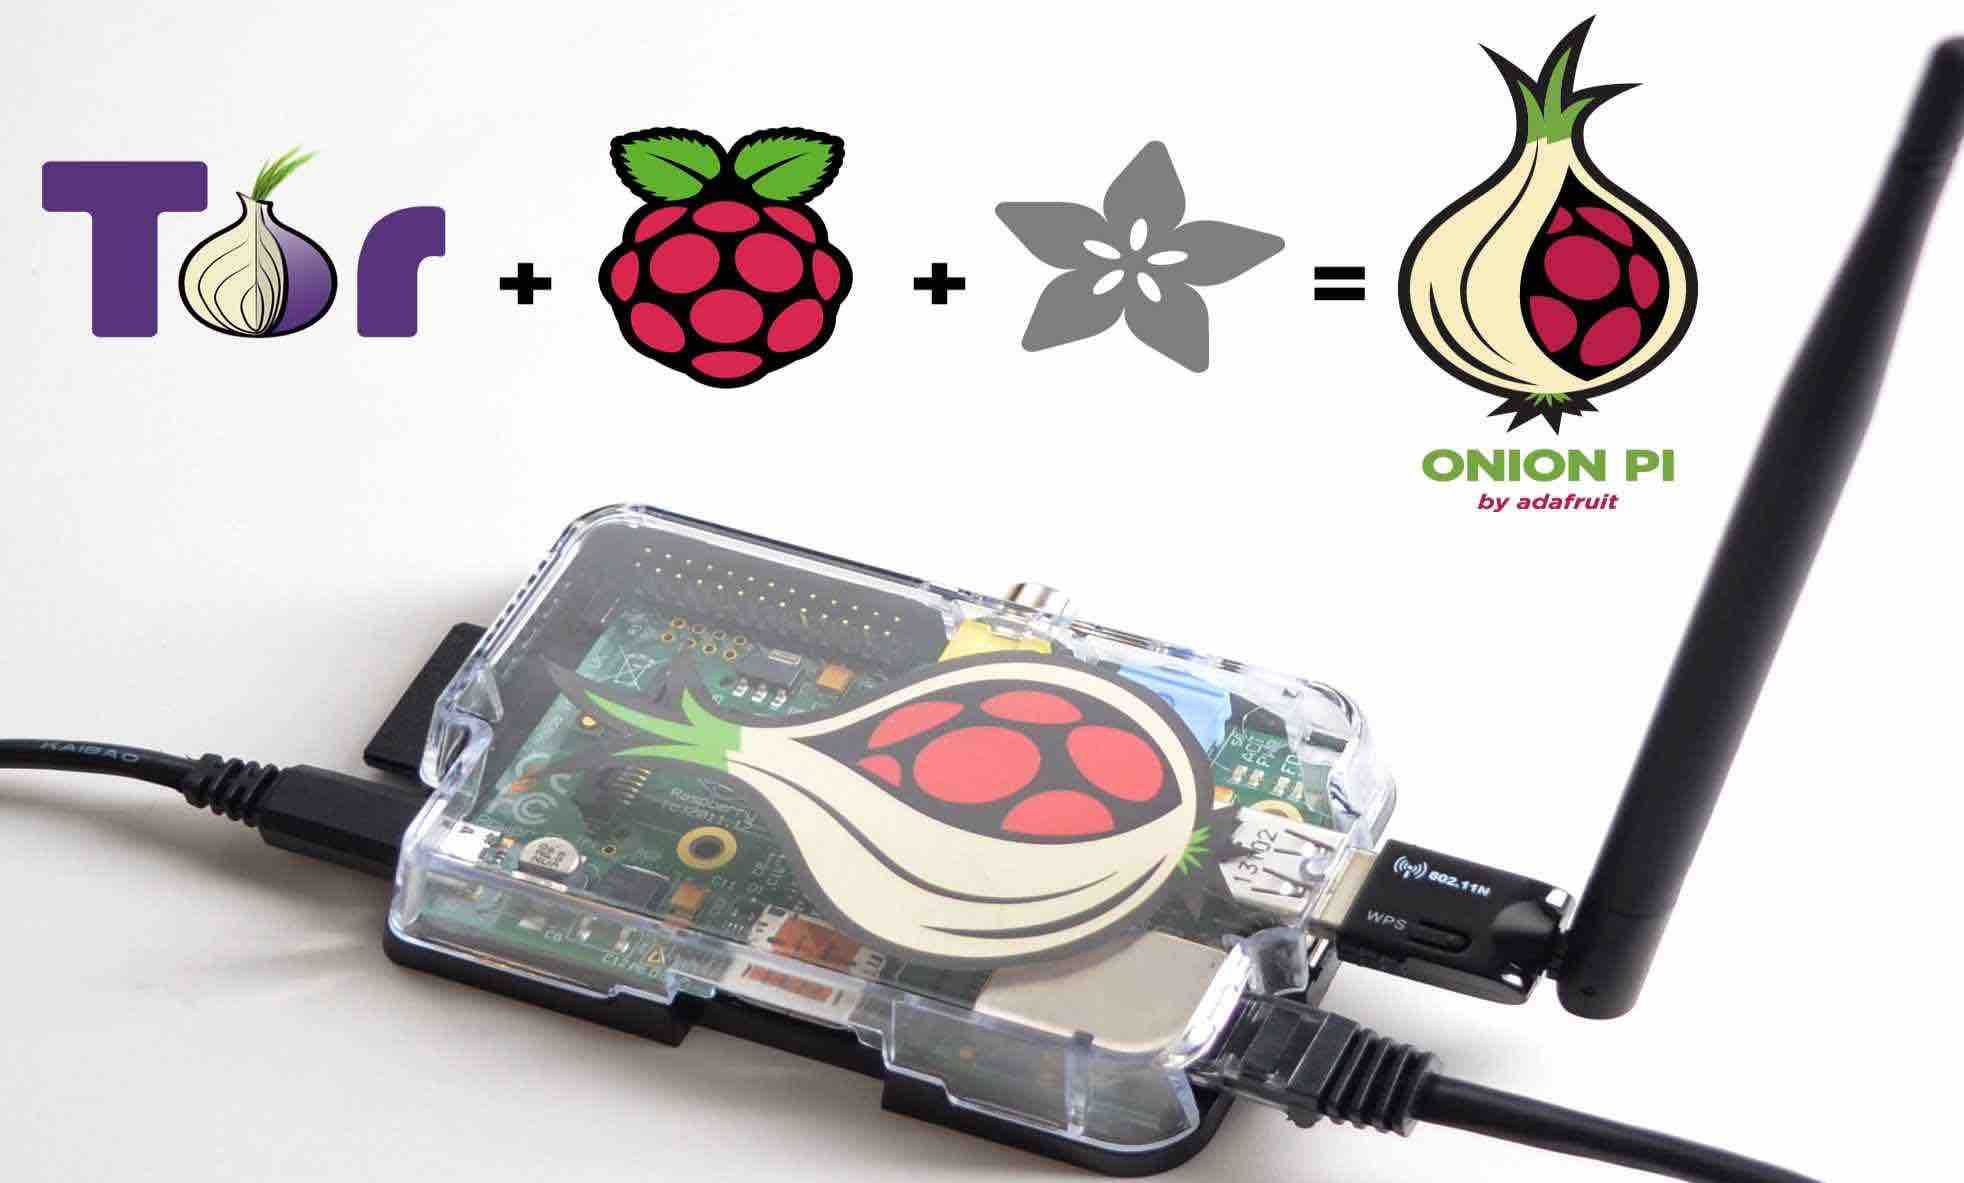 Tor browser on raspberry pi hyrda darknet image hosting